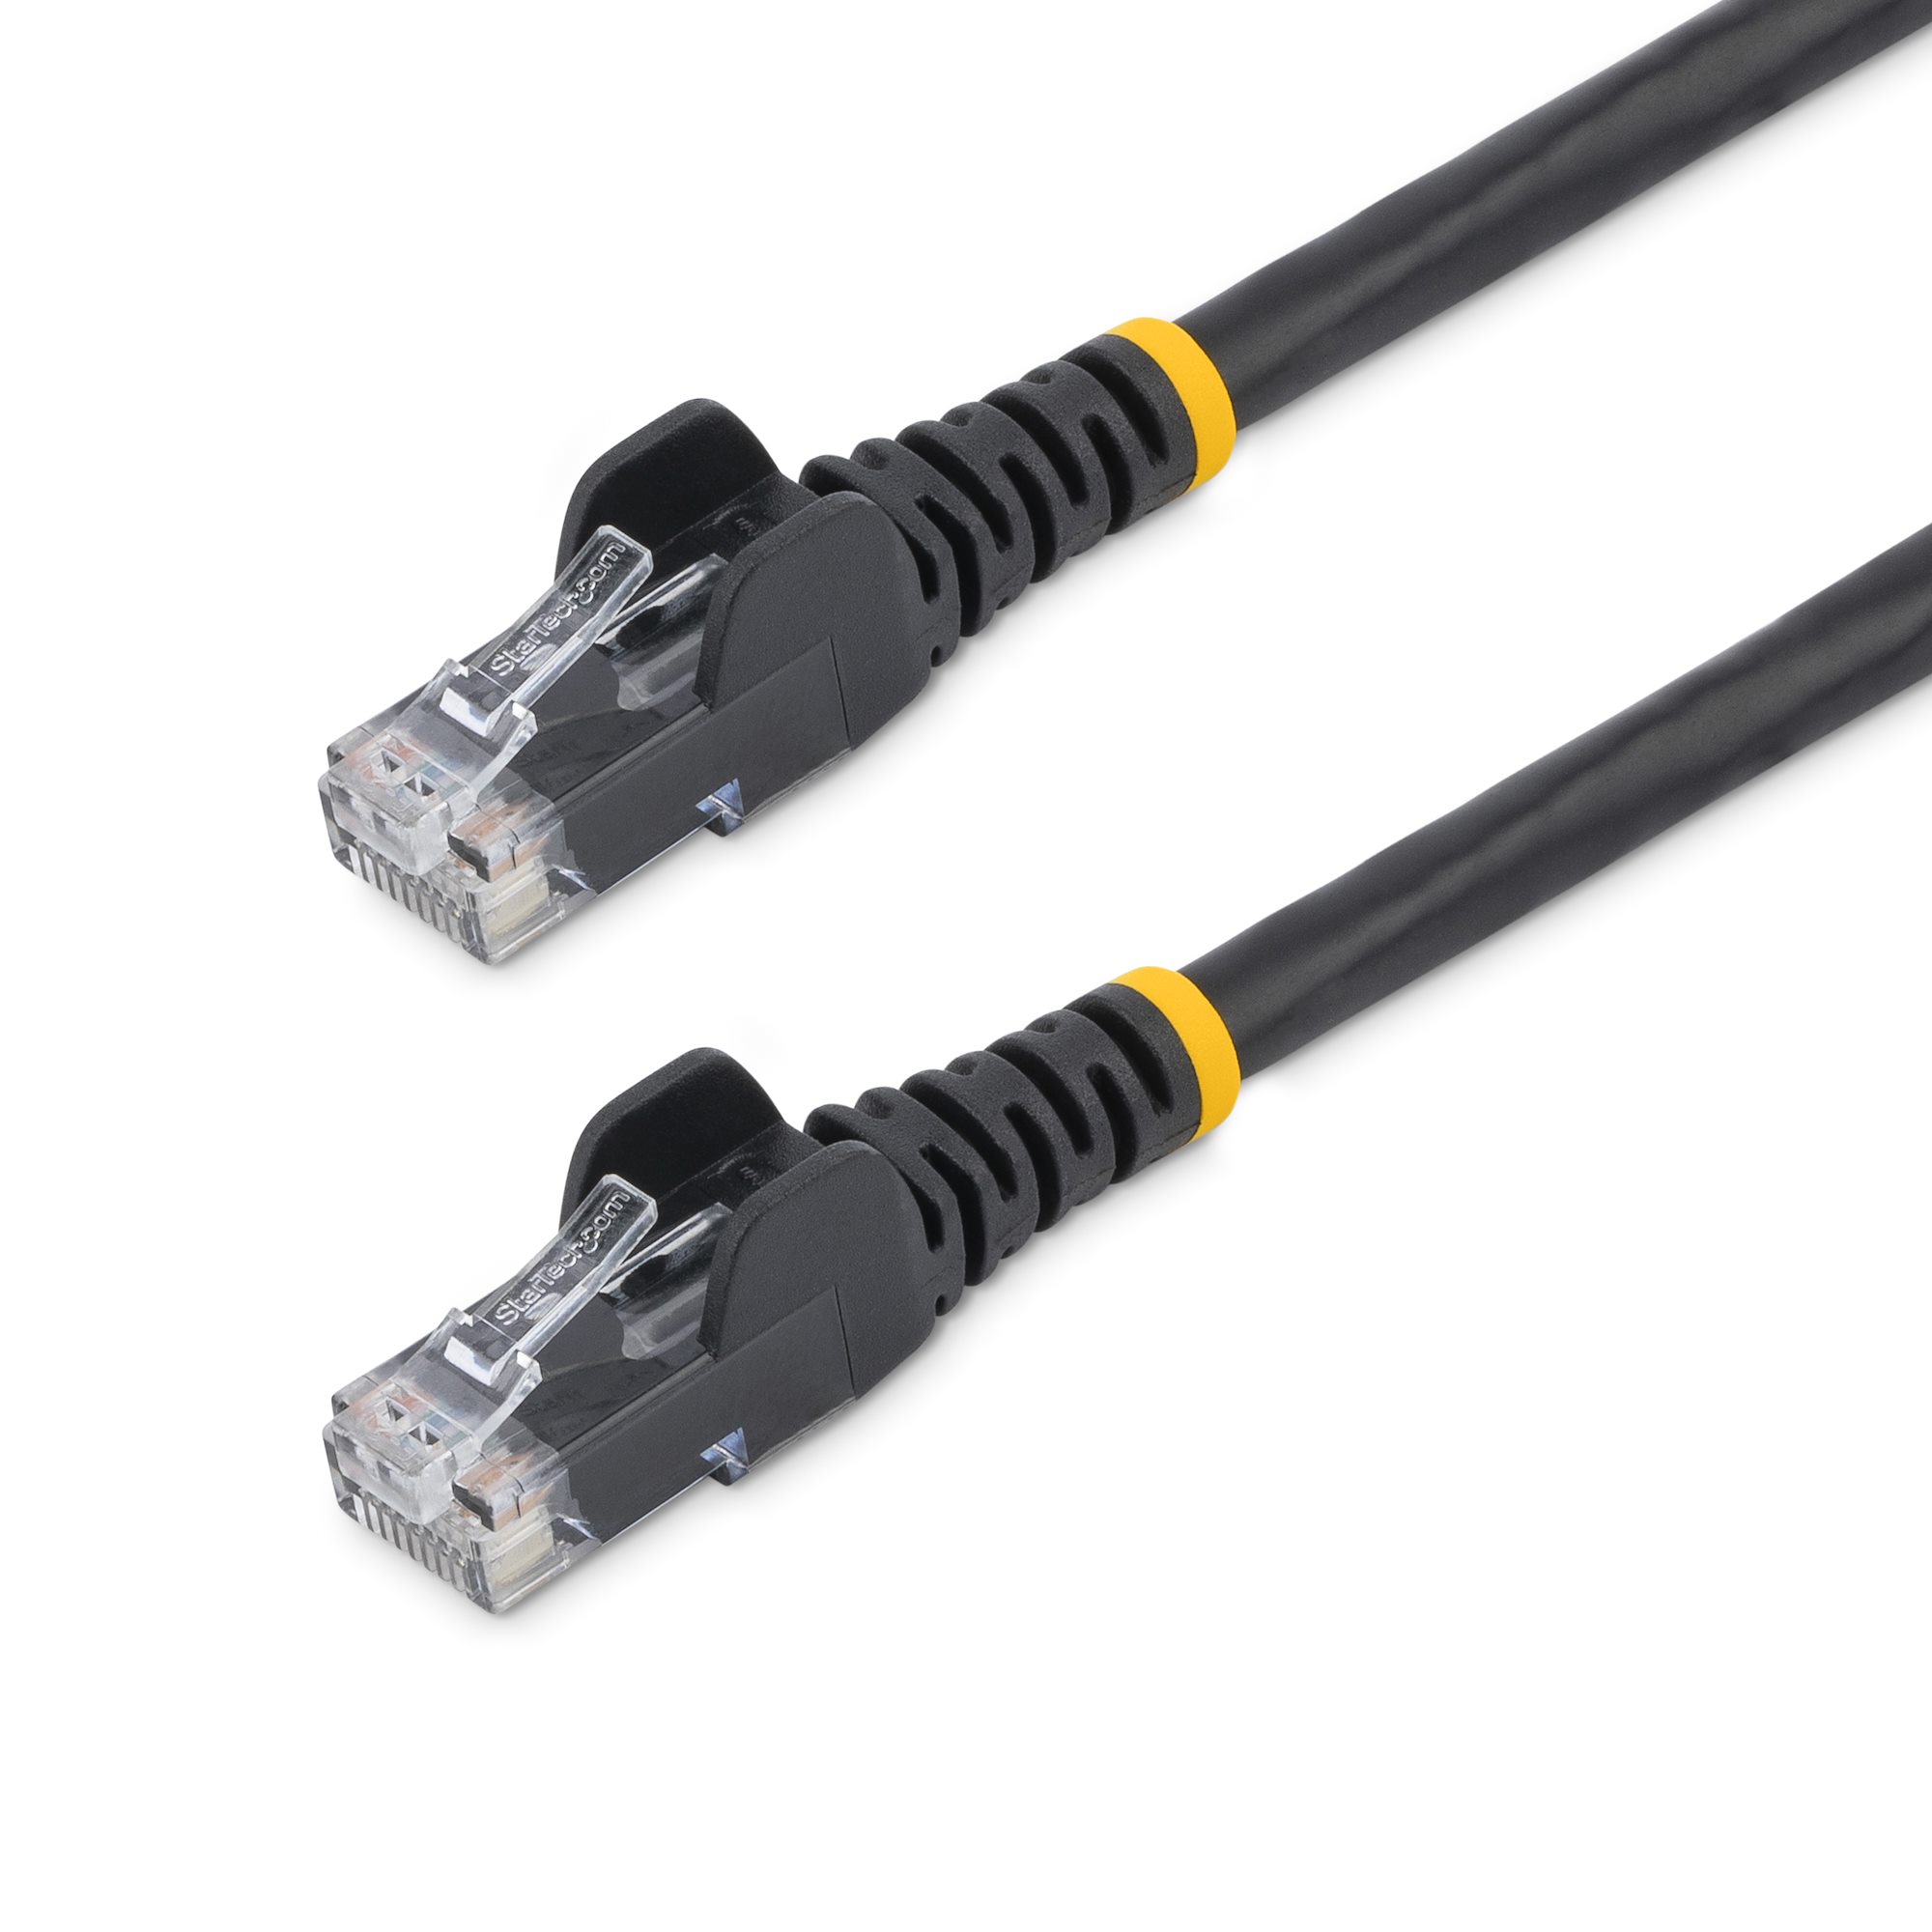 15m CAT6 Ethernet Cable Black Cat 6 PoE (N6PATC15MBK) - Cat 6